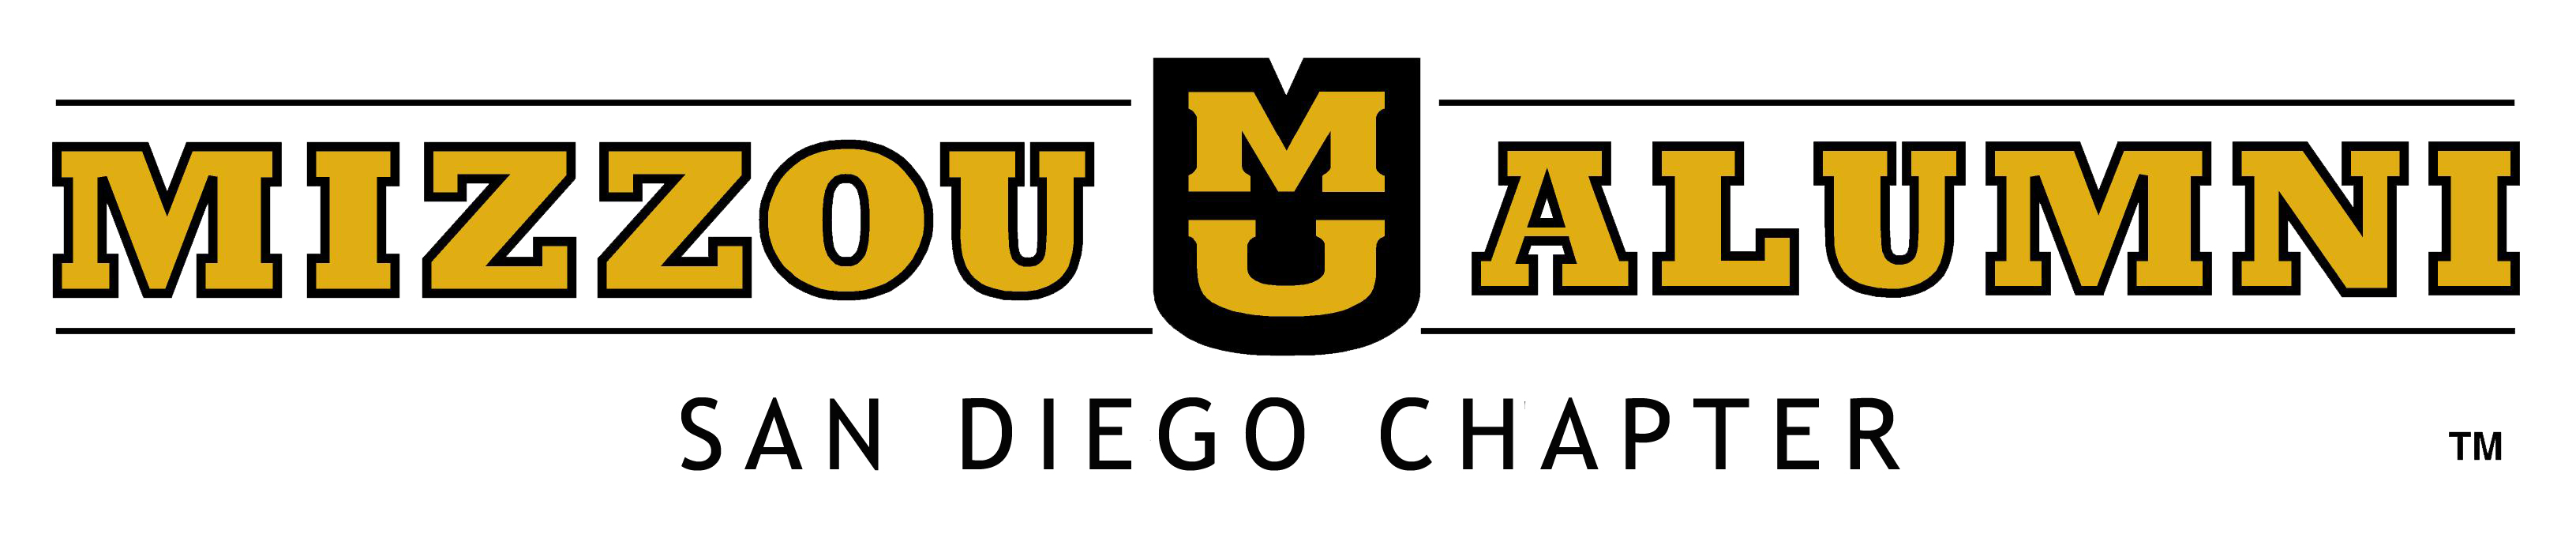 Mizzou Alumni San Diego Chapter